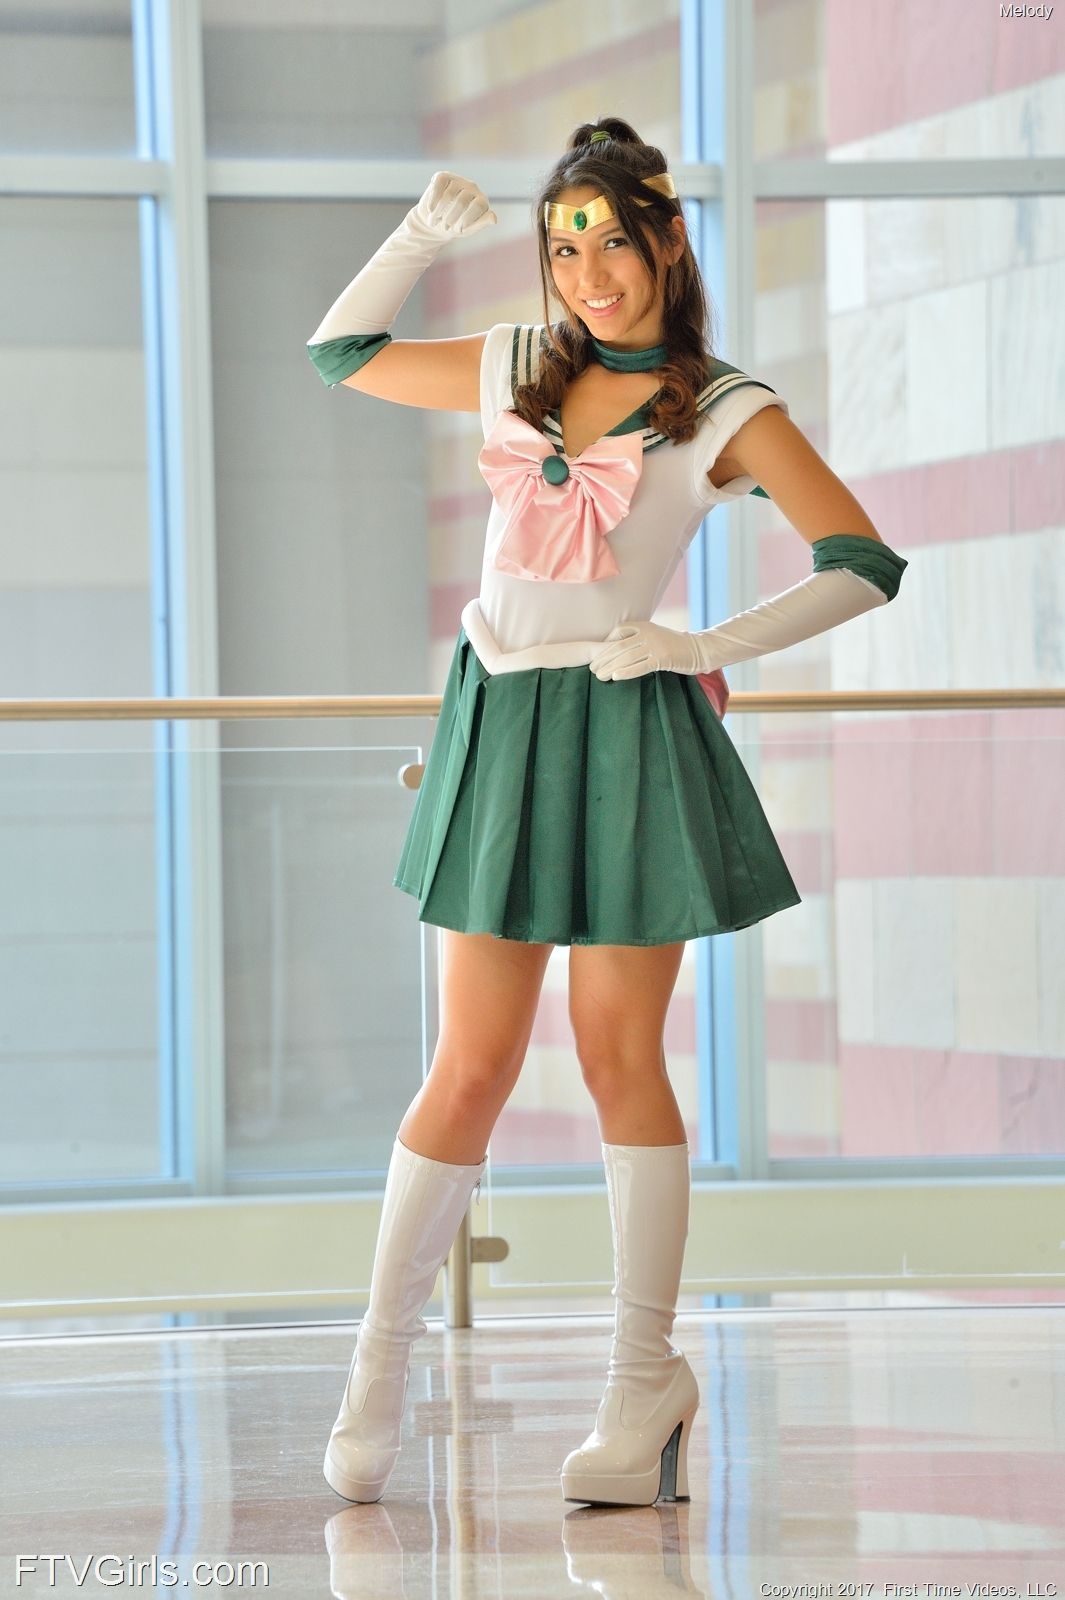 Melody Wylde as Sailor Jupiter 59